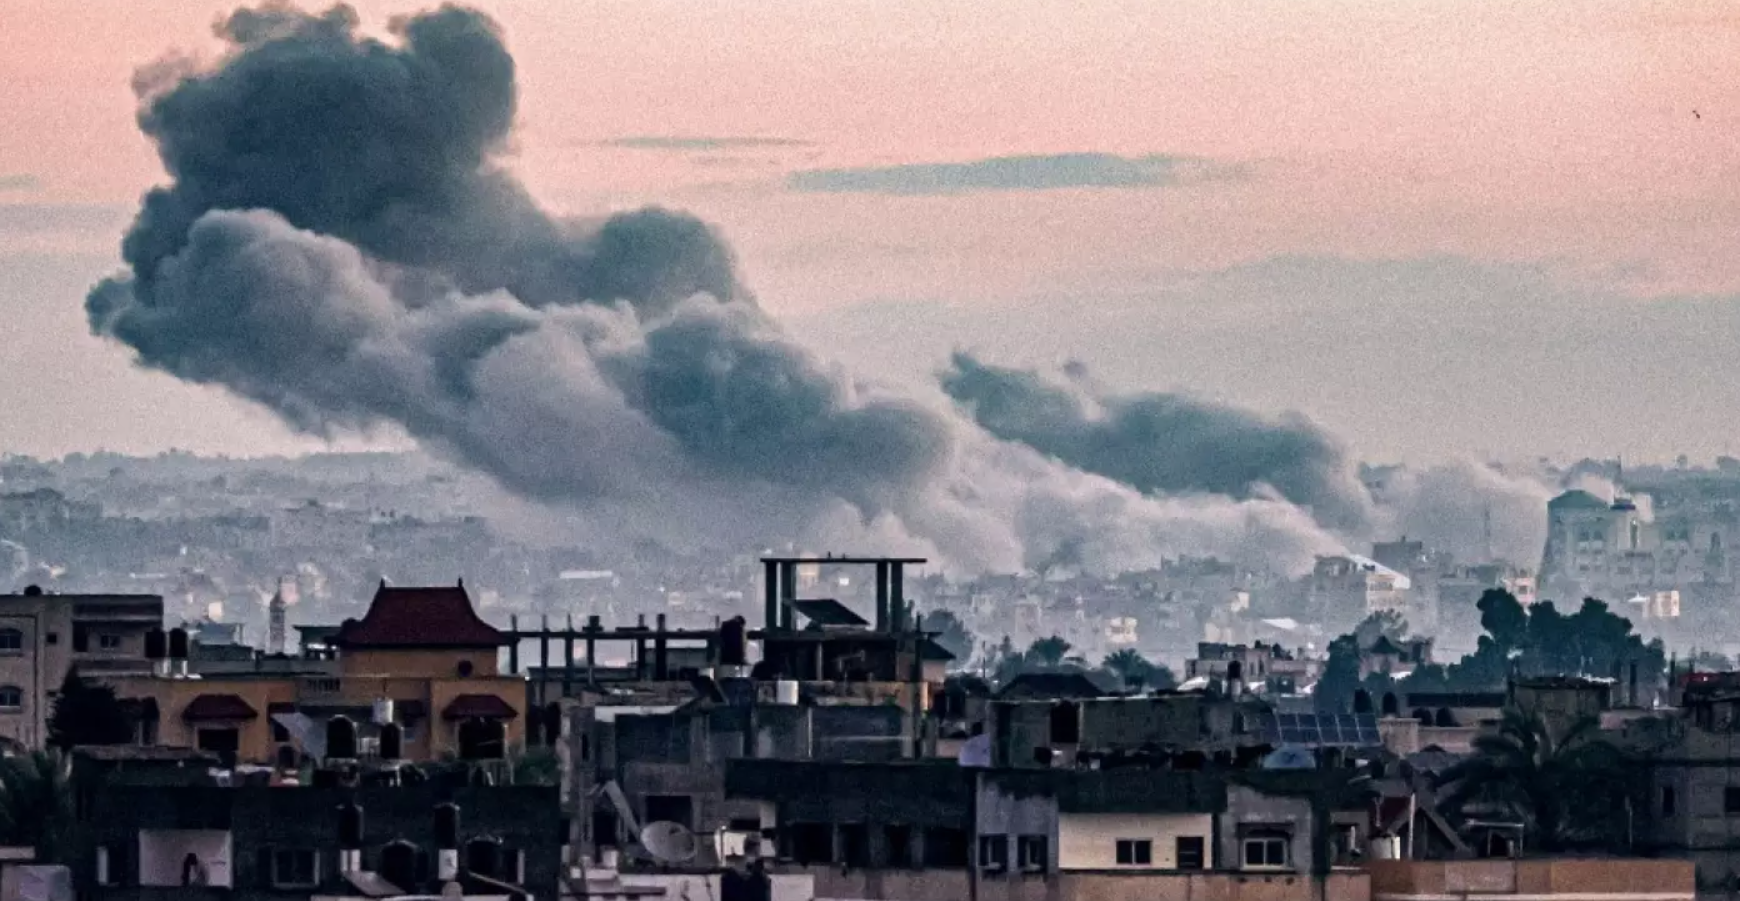 قصف اليمن.. ديفيد هيرست يتنبأ بكارثة إقليمية: "الطلقات الأولى لحرب أكبر"